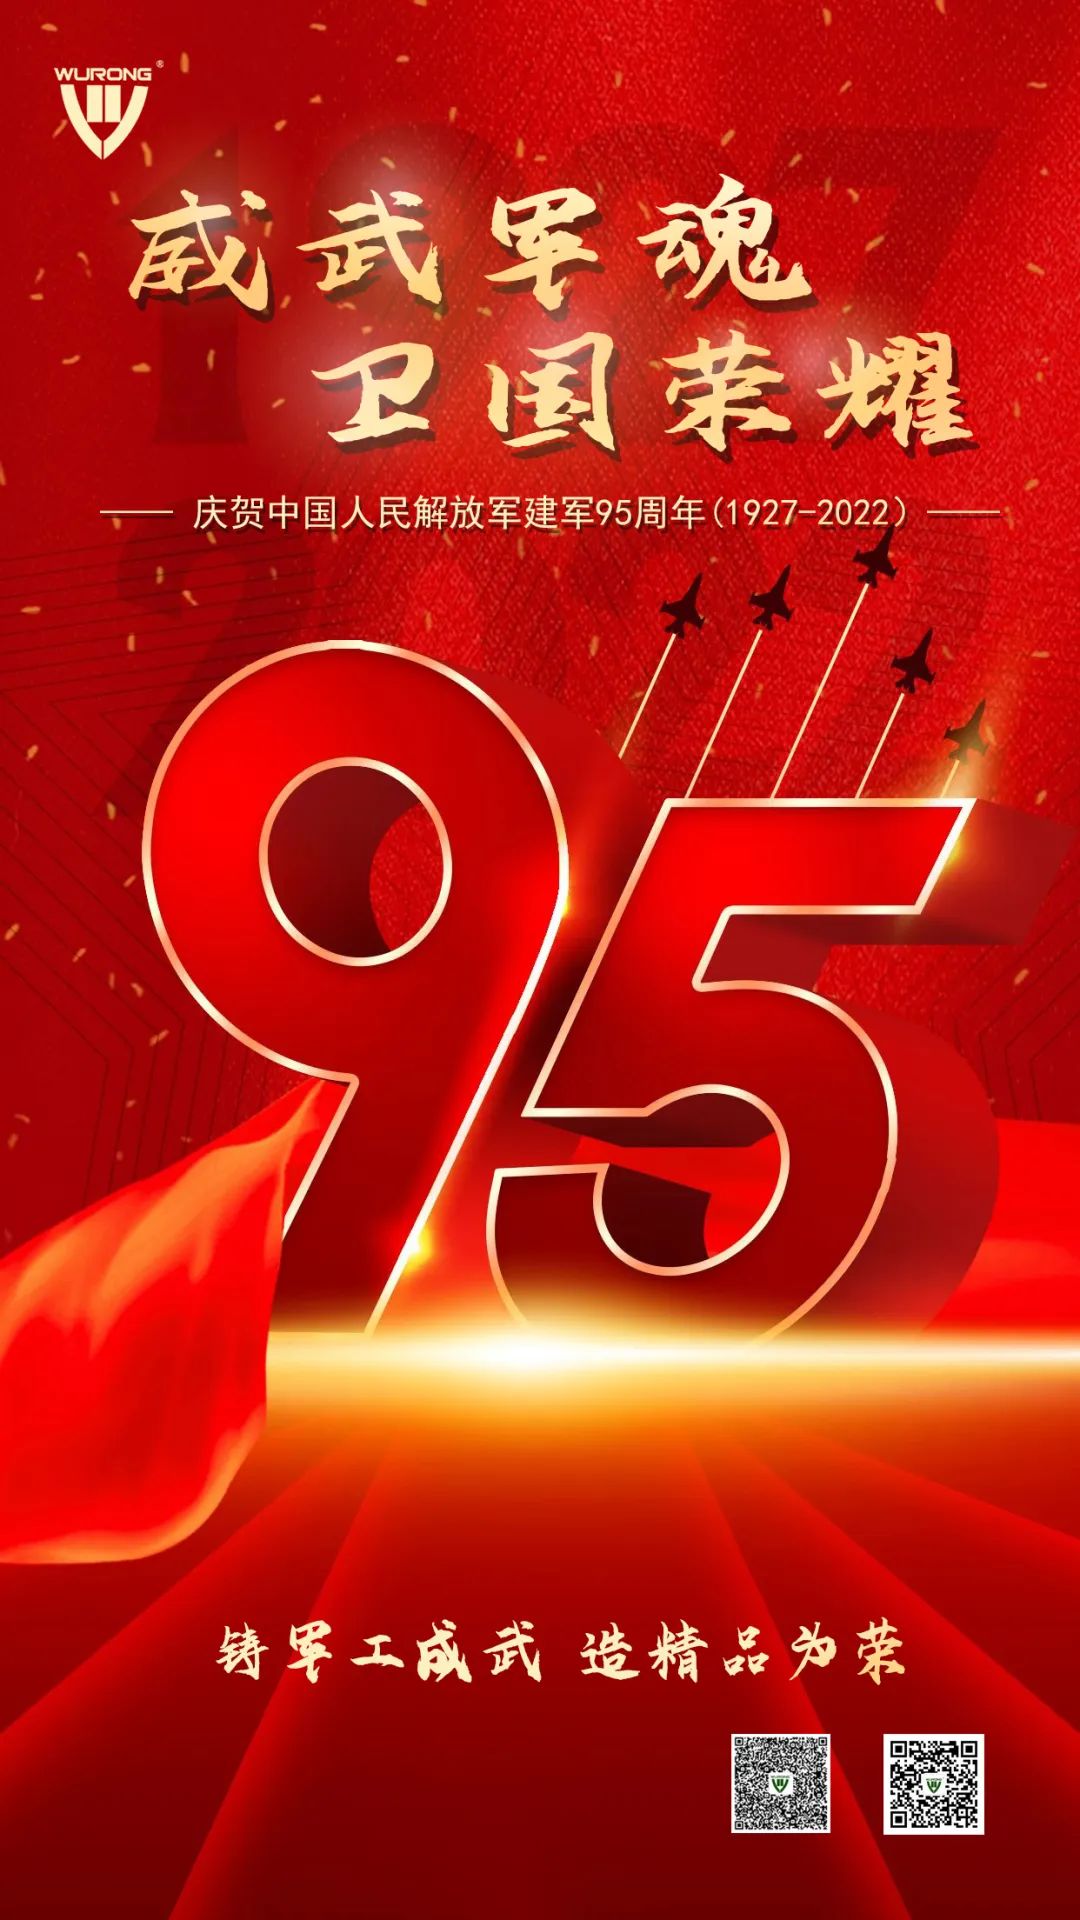 威武軍魂 衛國榮耀——熱烈慶祝中國人民解放軍建軍95周年！